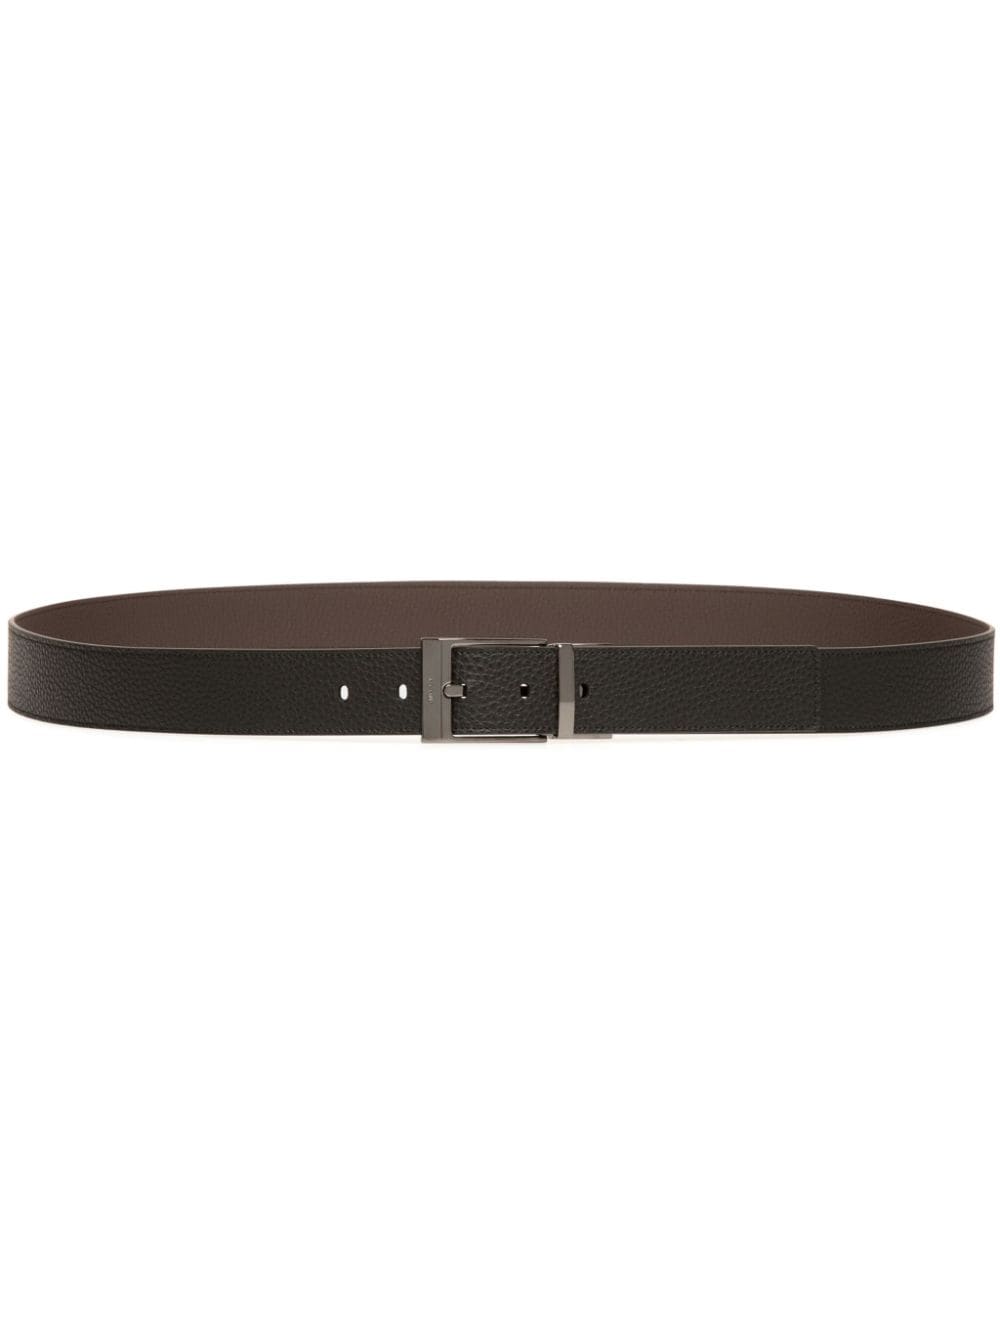 Bally Shiffie leather belt - Black von Bally